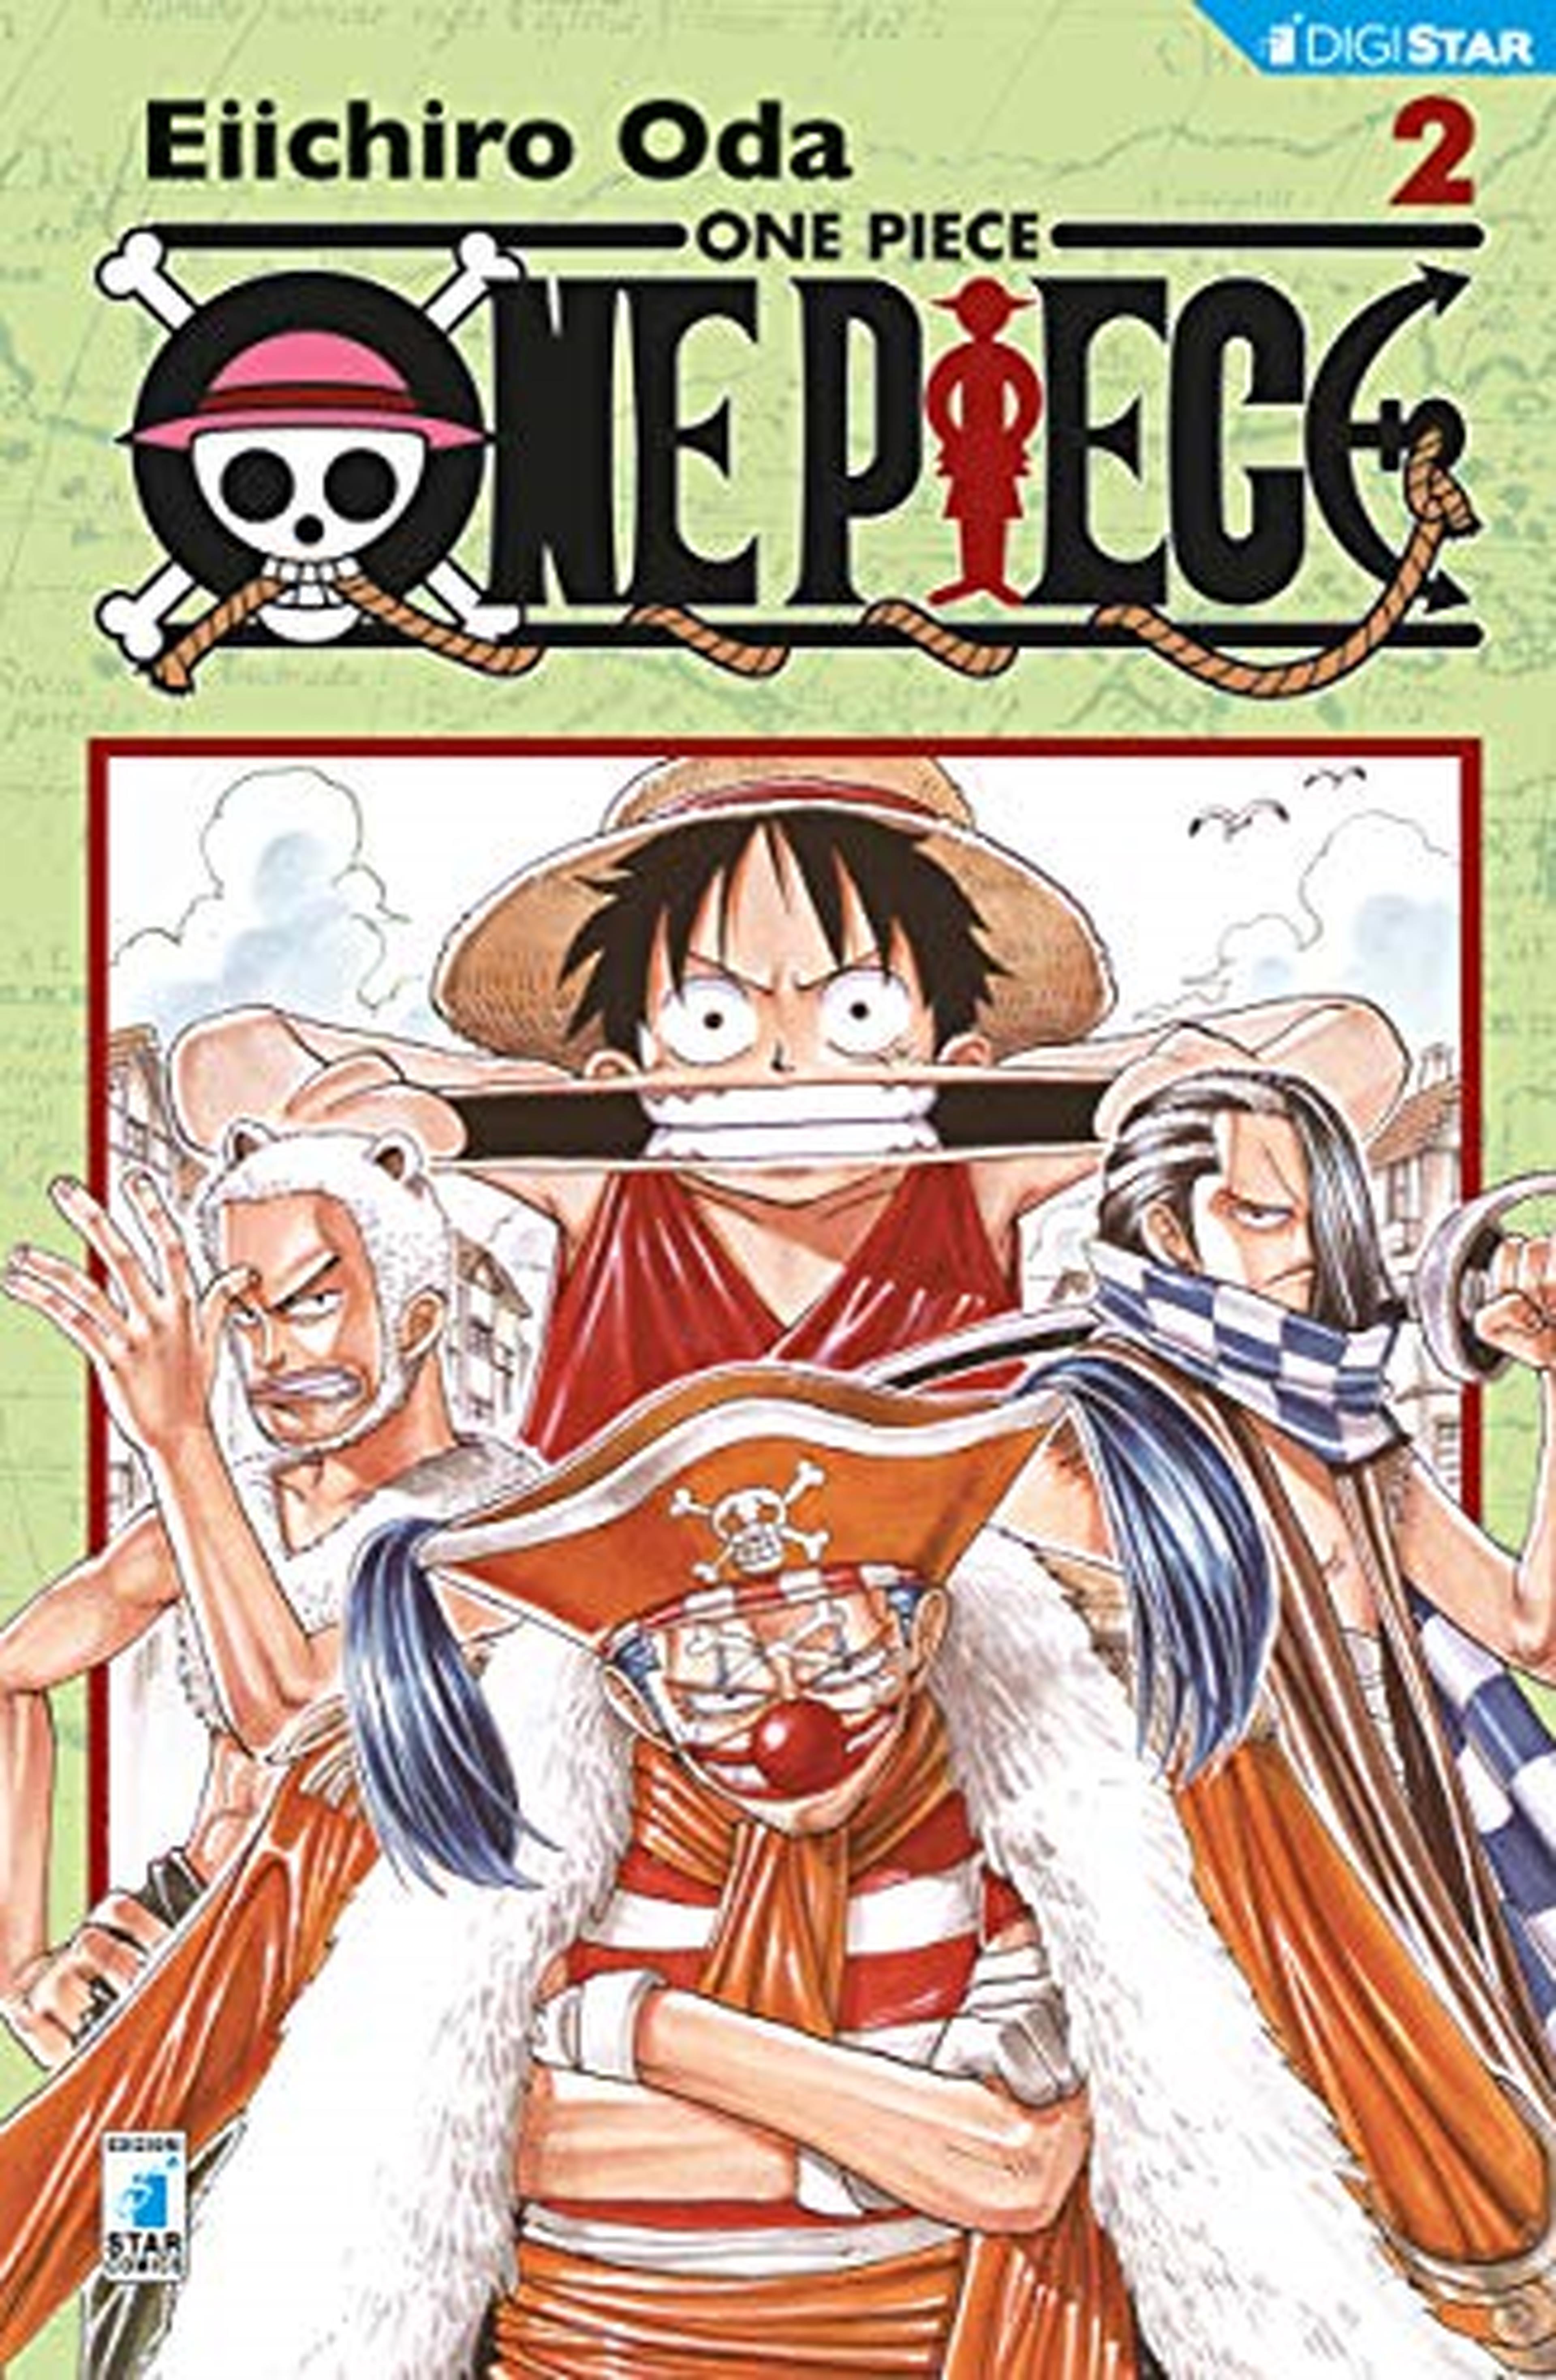 One Piece 2: Digital Edition